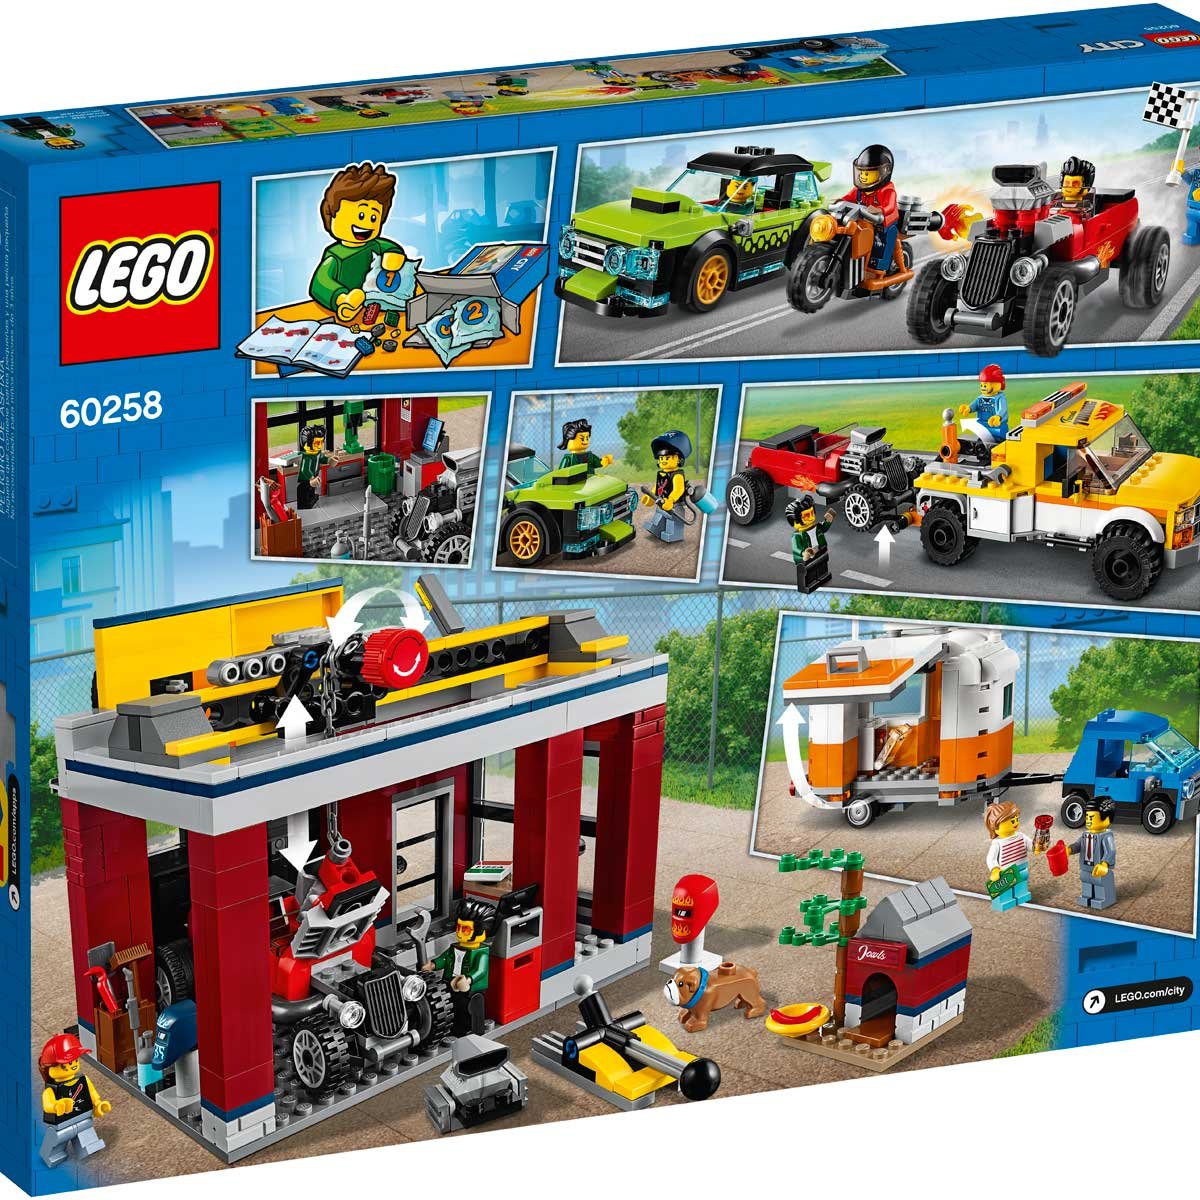 Taller de Tuneado Lego City